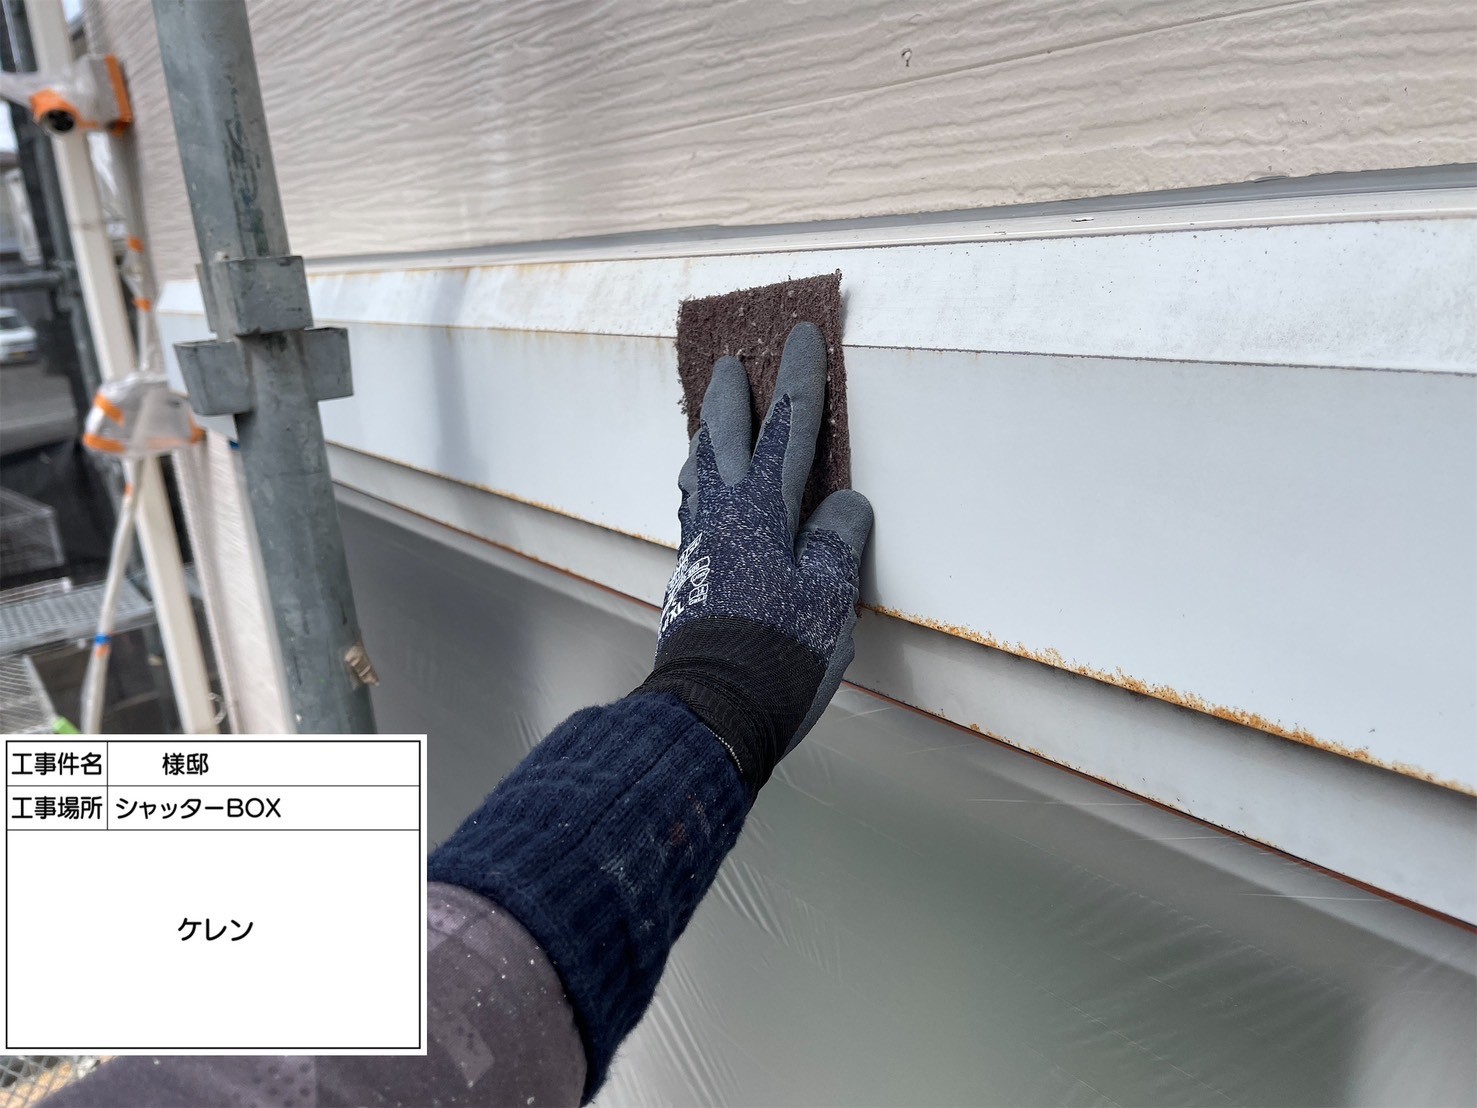 福岡県小郡市大保のO様邸でサイディングの外壁と金属屋根をプレマテックス社の高品質なタテイルαで塗装していきます。3/5着工です。【HPより】